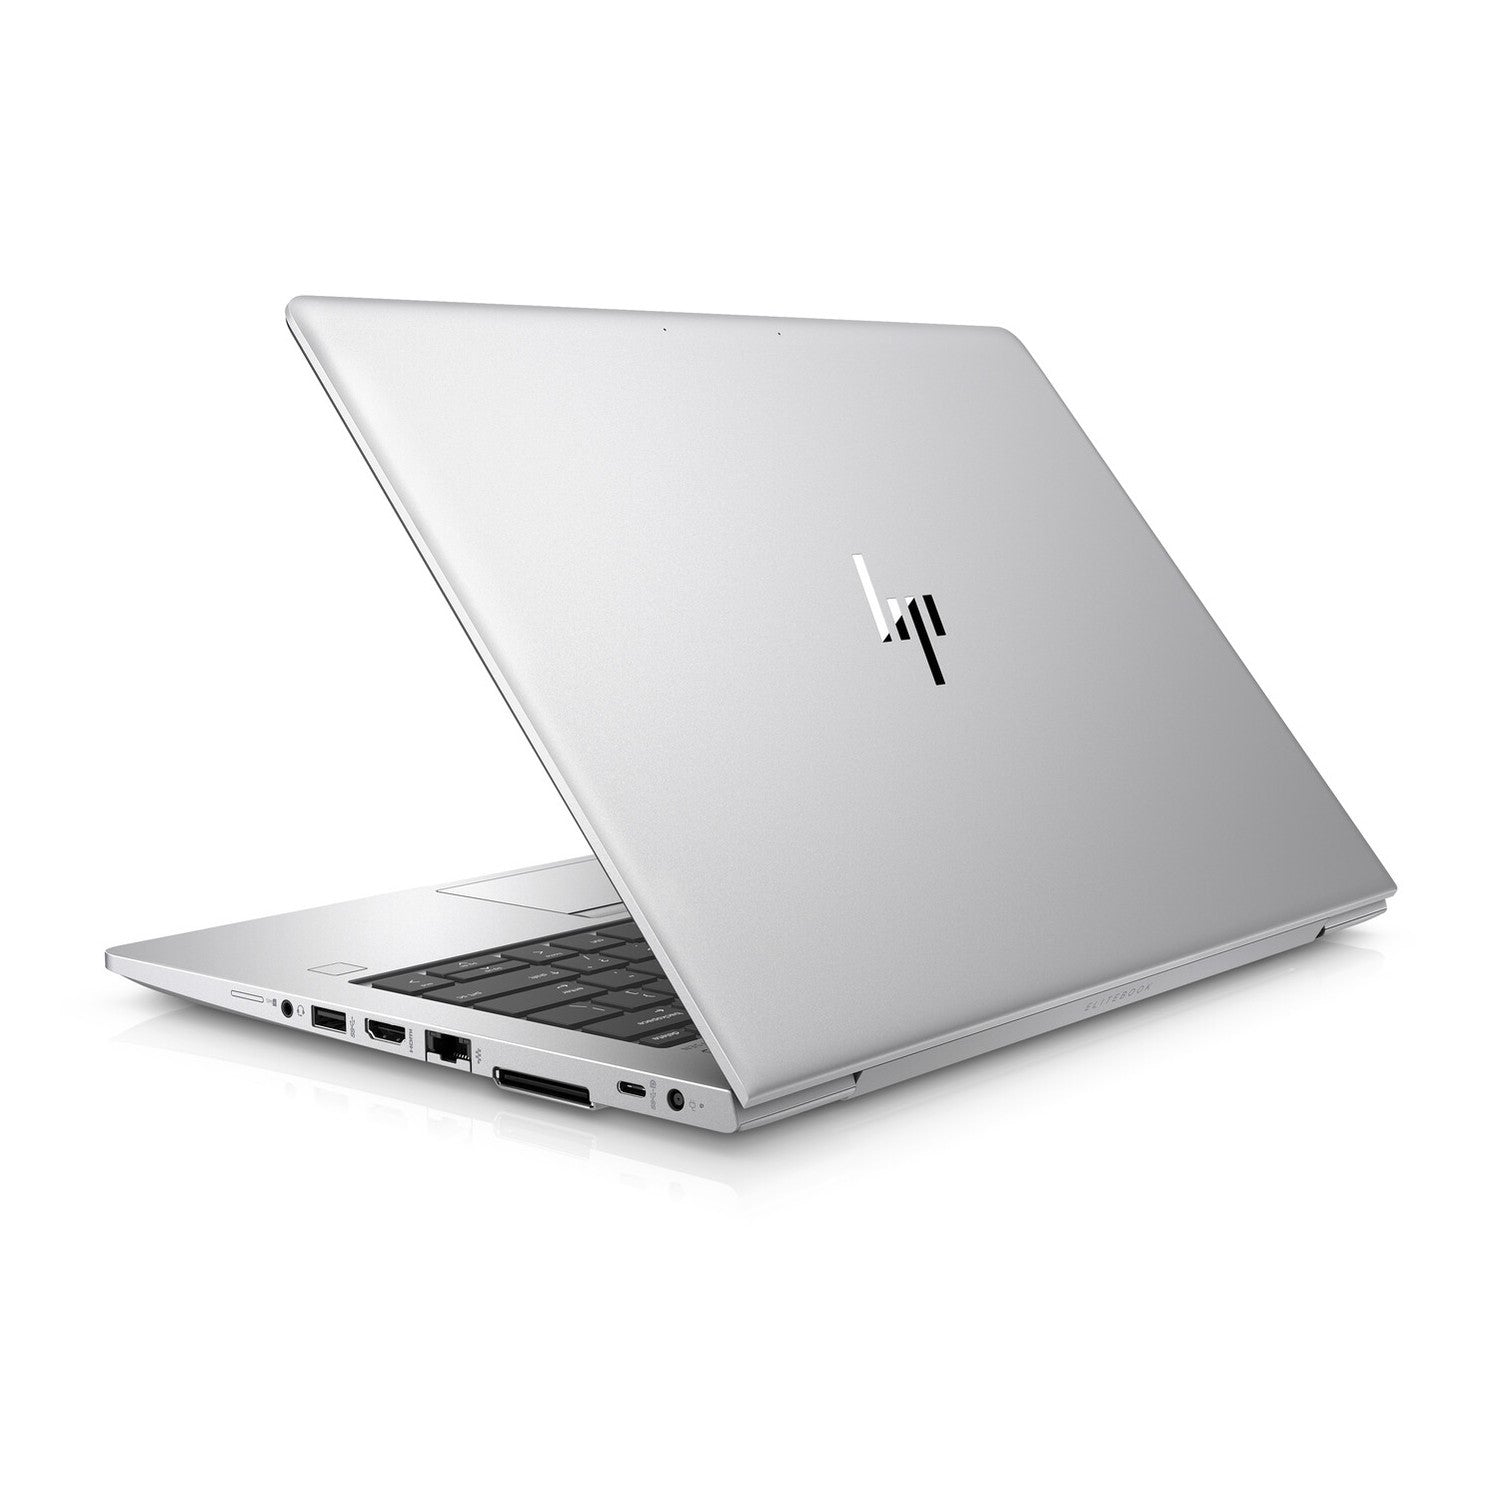 HP EliteBook 745 G6 AMD Ryzen 5 Pro 3500U 16GB RAM 256GB - Excellent